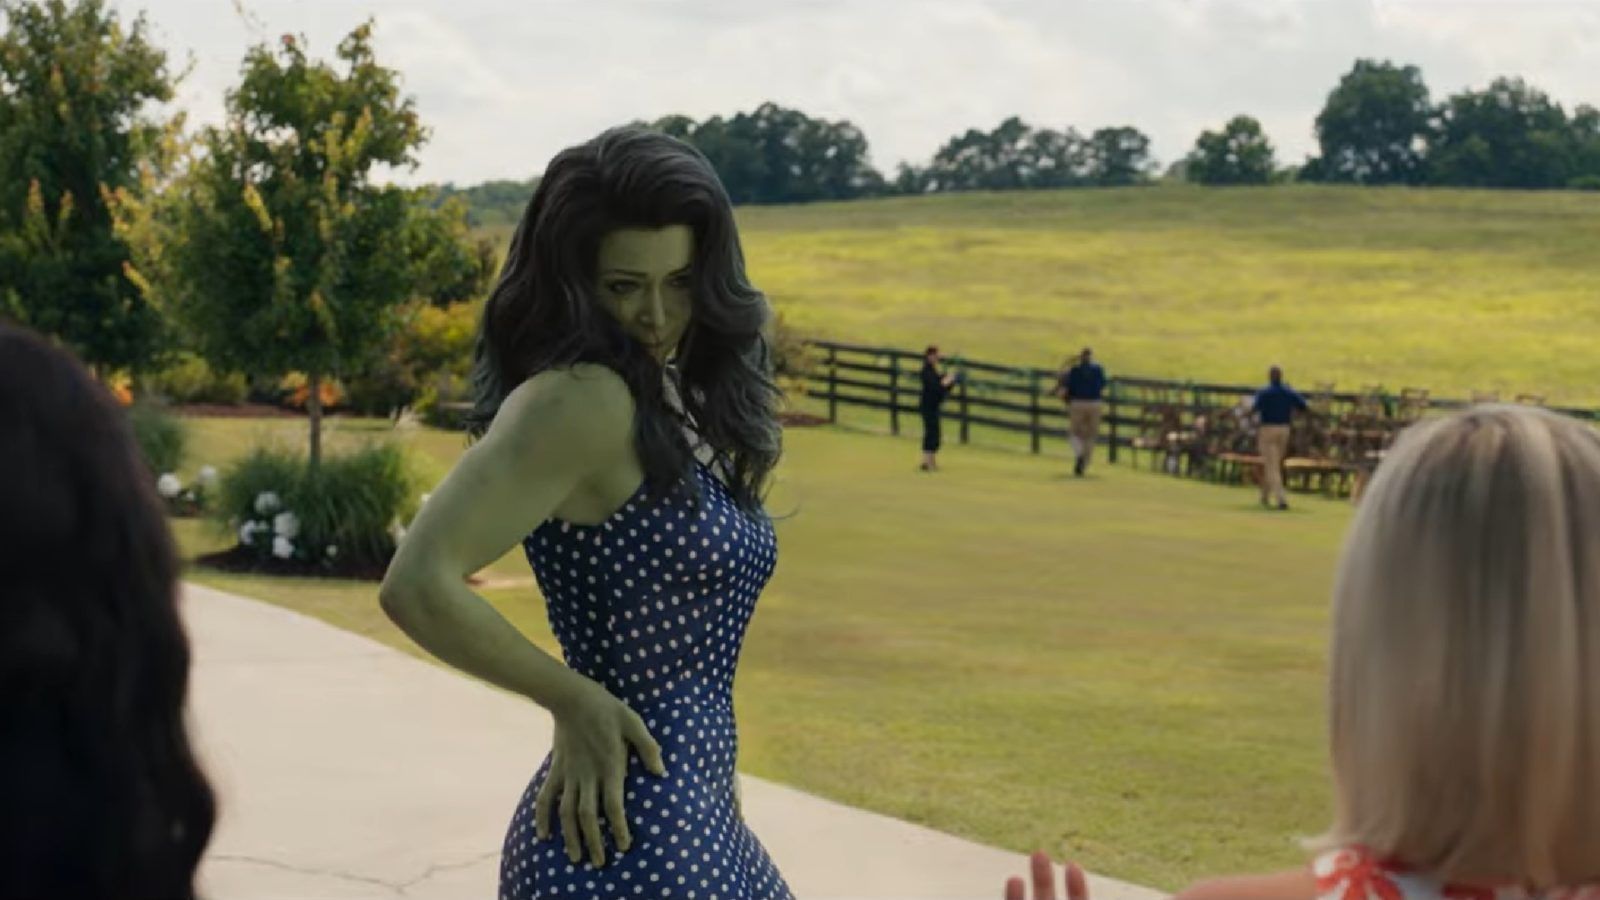 ‘She-Hulk: Attorney at Law’ trailer shows Tatiana Maslany as the green superhero